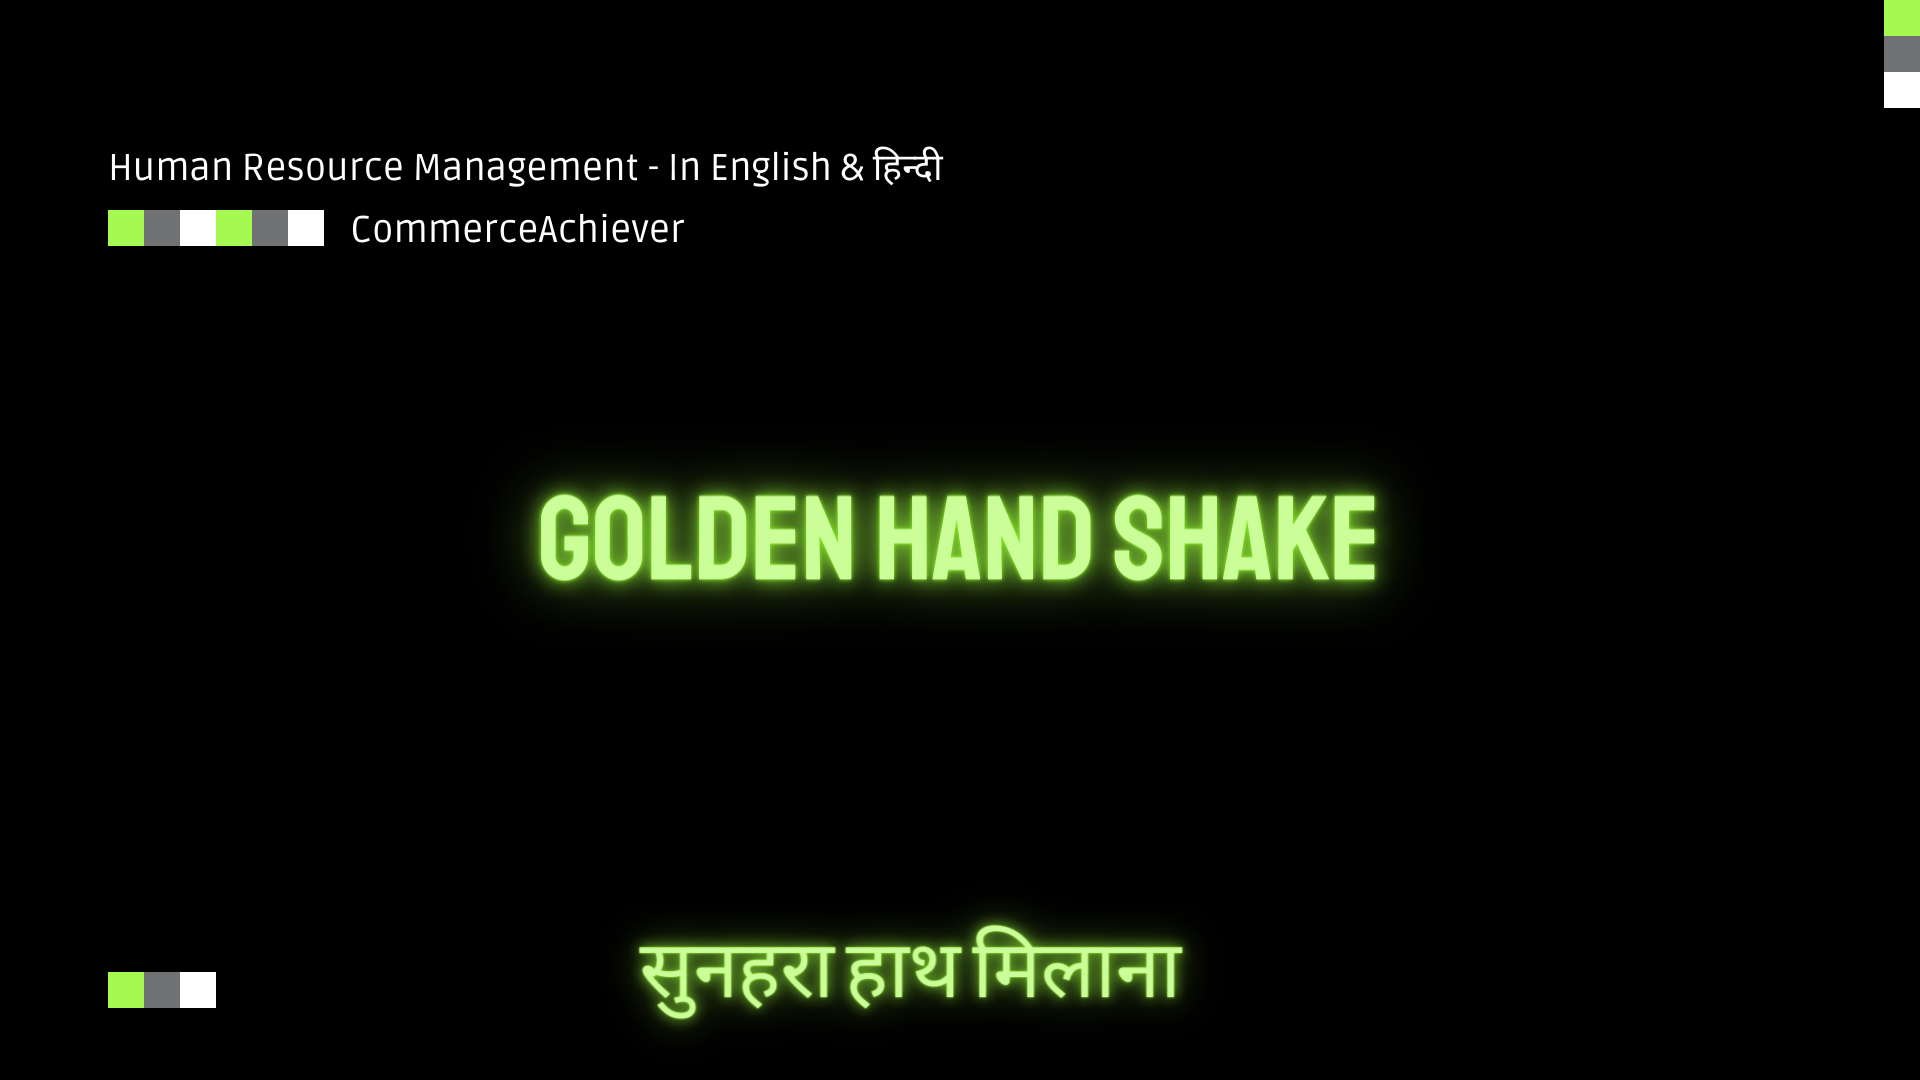 Golden Hand Shake